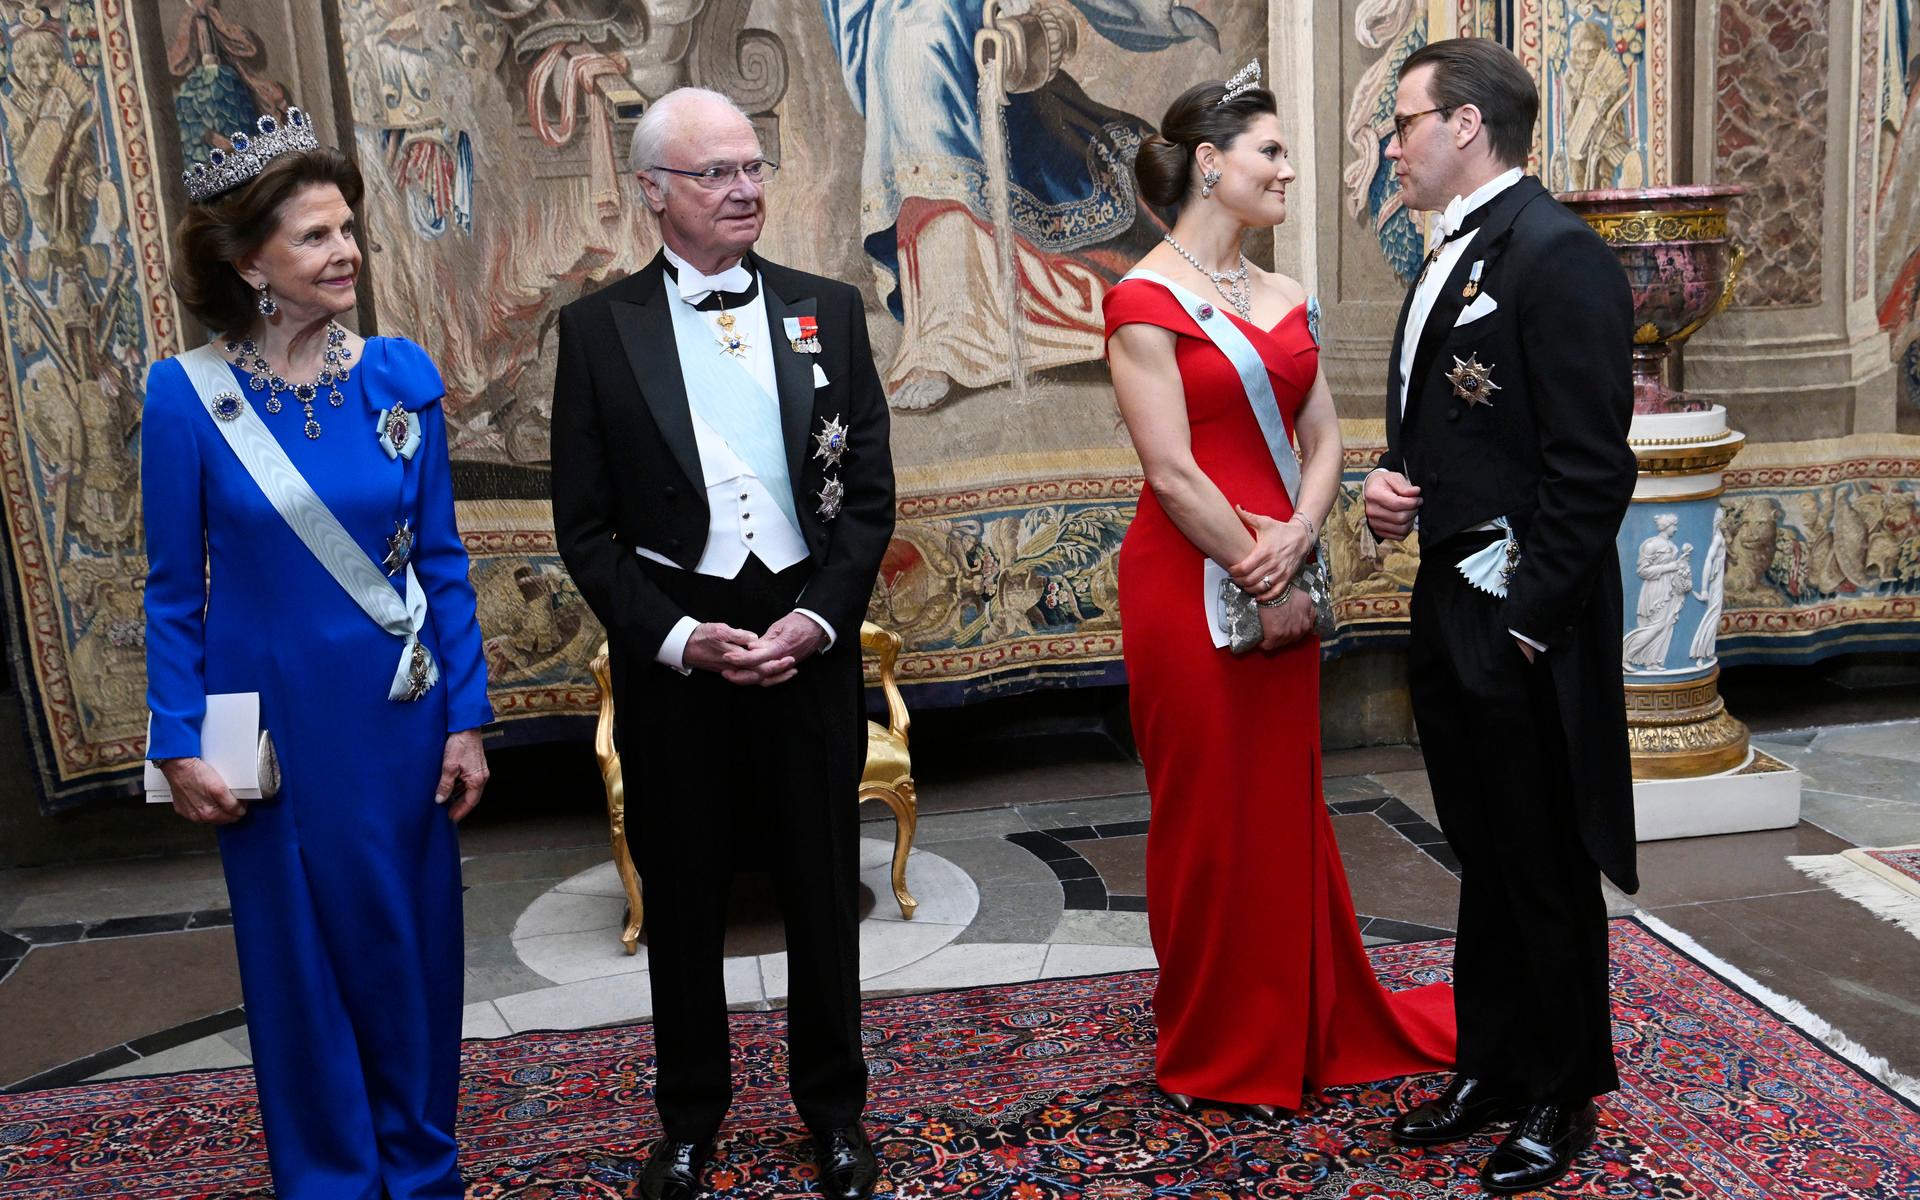 Kvällen innan var det galamiddag på slottet med bland annat inbjudna politiker, ambassadörer, personer från näringslivet och media. Drottning Silvia, kung Carl Gustaf, kronprinsessan Victoria och prins Daniel anländer till middagen.